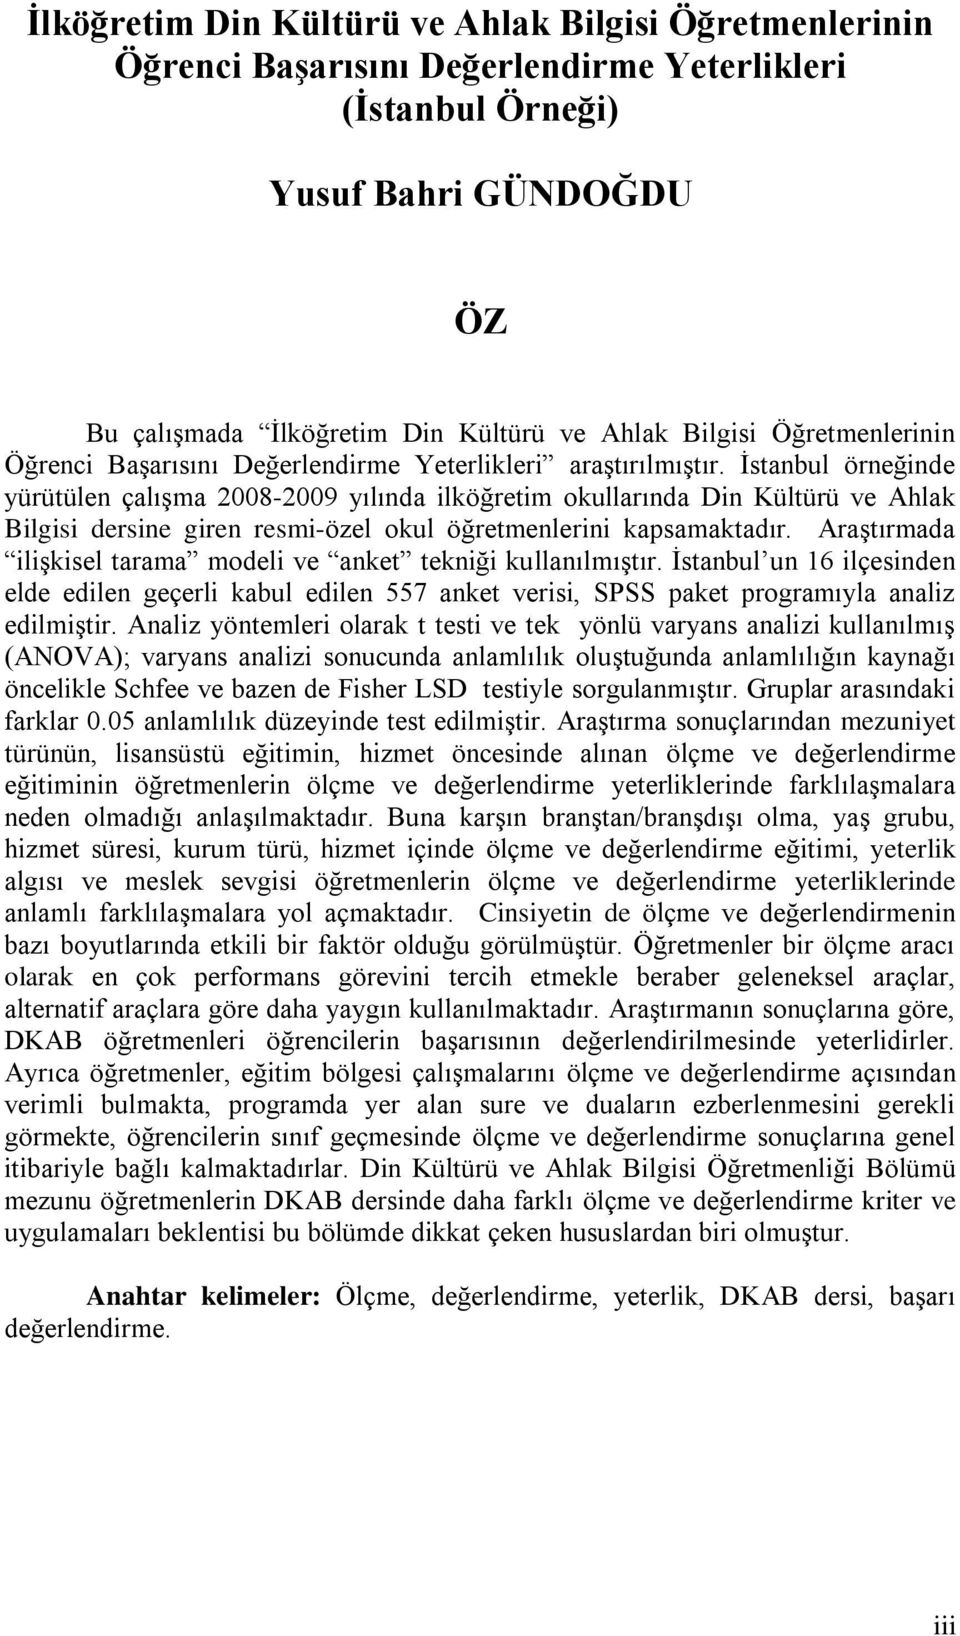 İstanbul örneğinde yürütülen çalışma 2008-2009 yılında ilköğretim okullarında Din Kültürü ve Ahlak Bilgisi dersine giren resmi-özel okul öğretmenlerini kapsamaktadır.